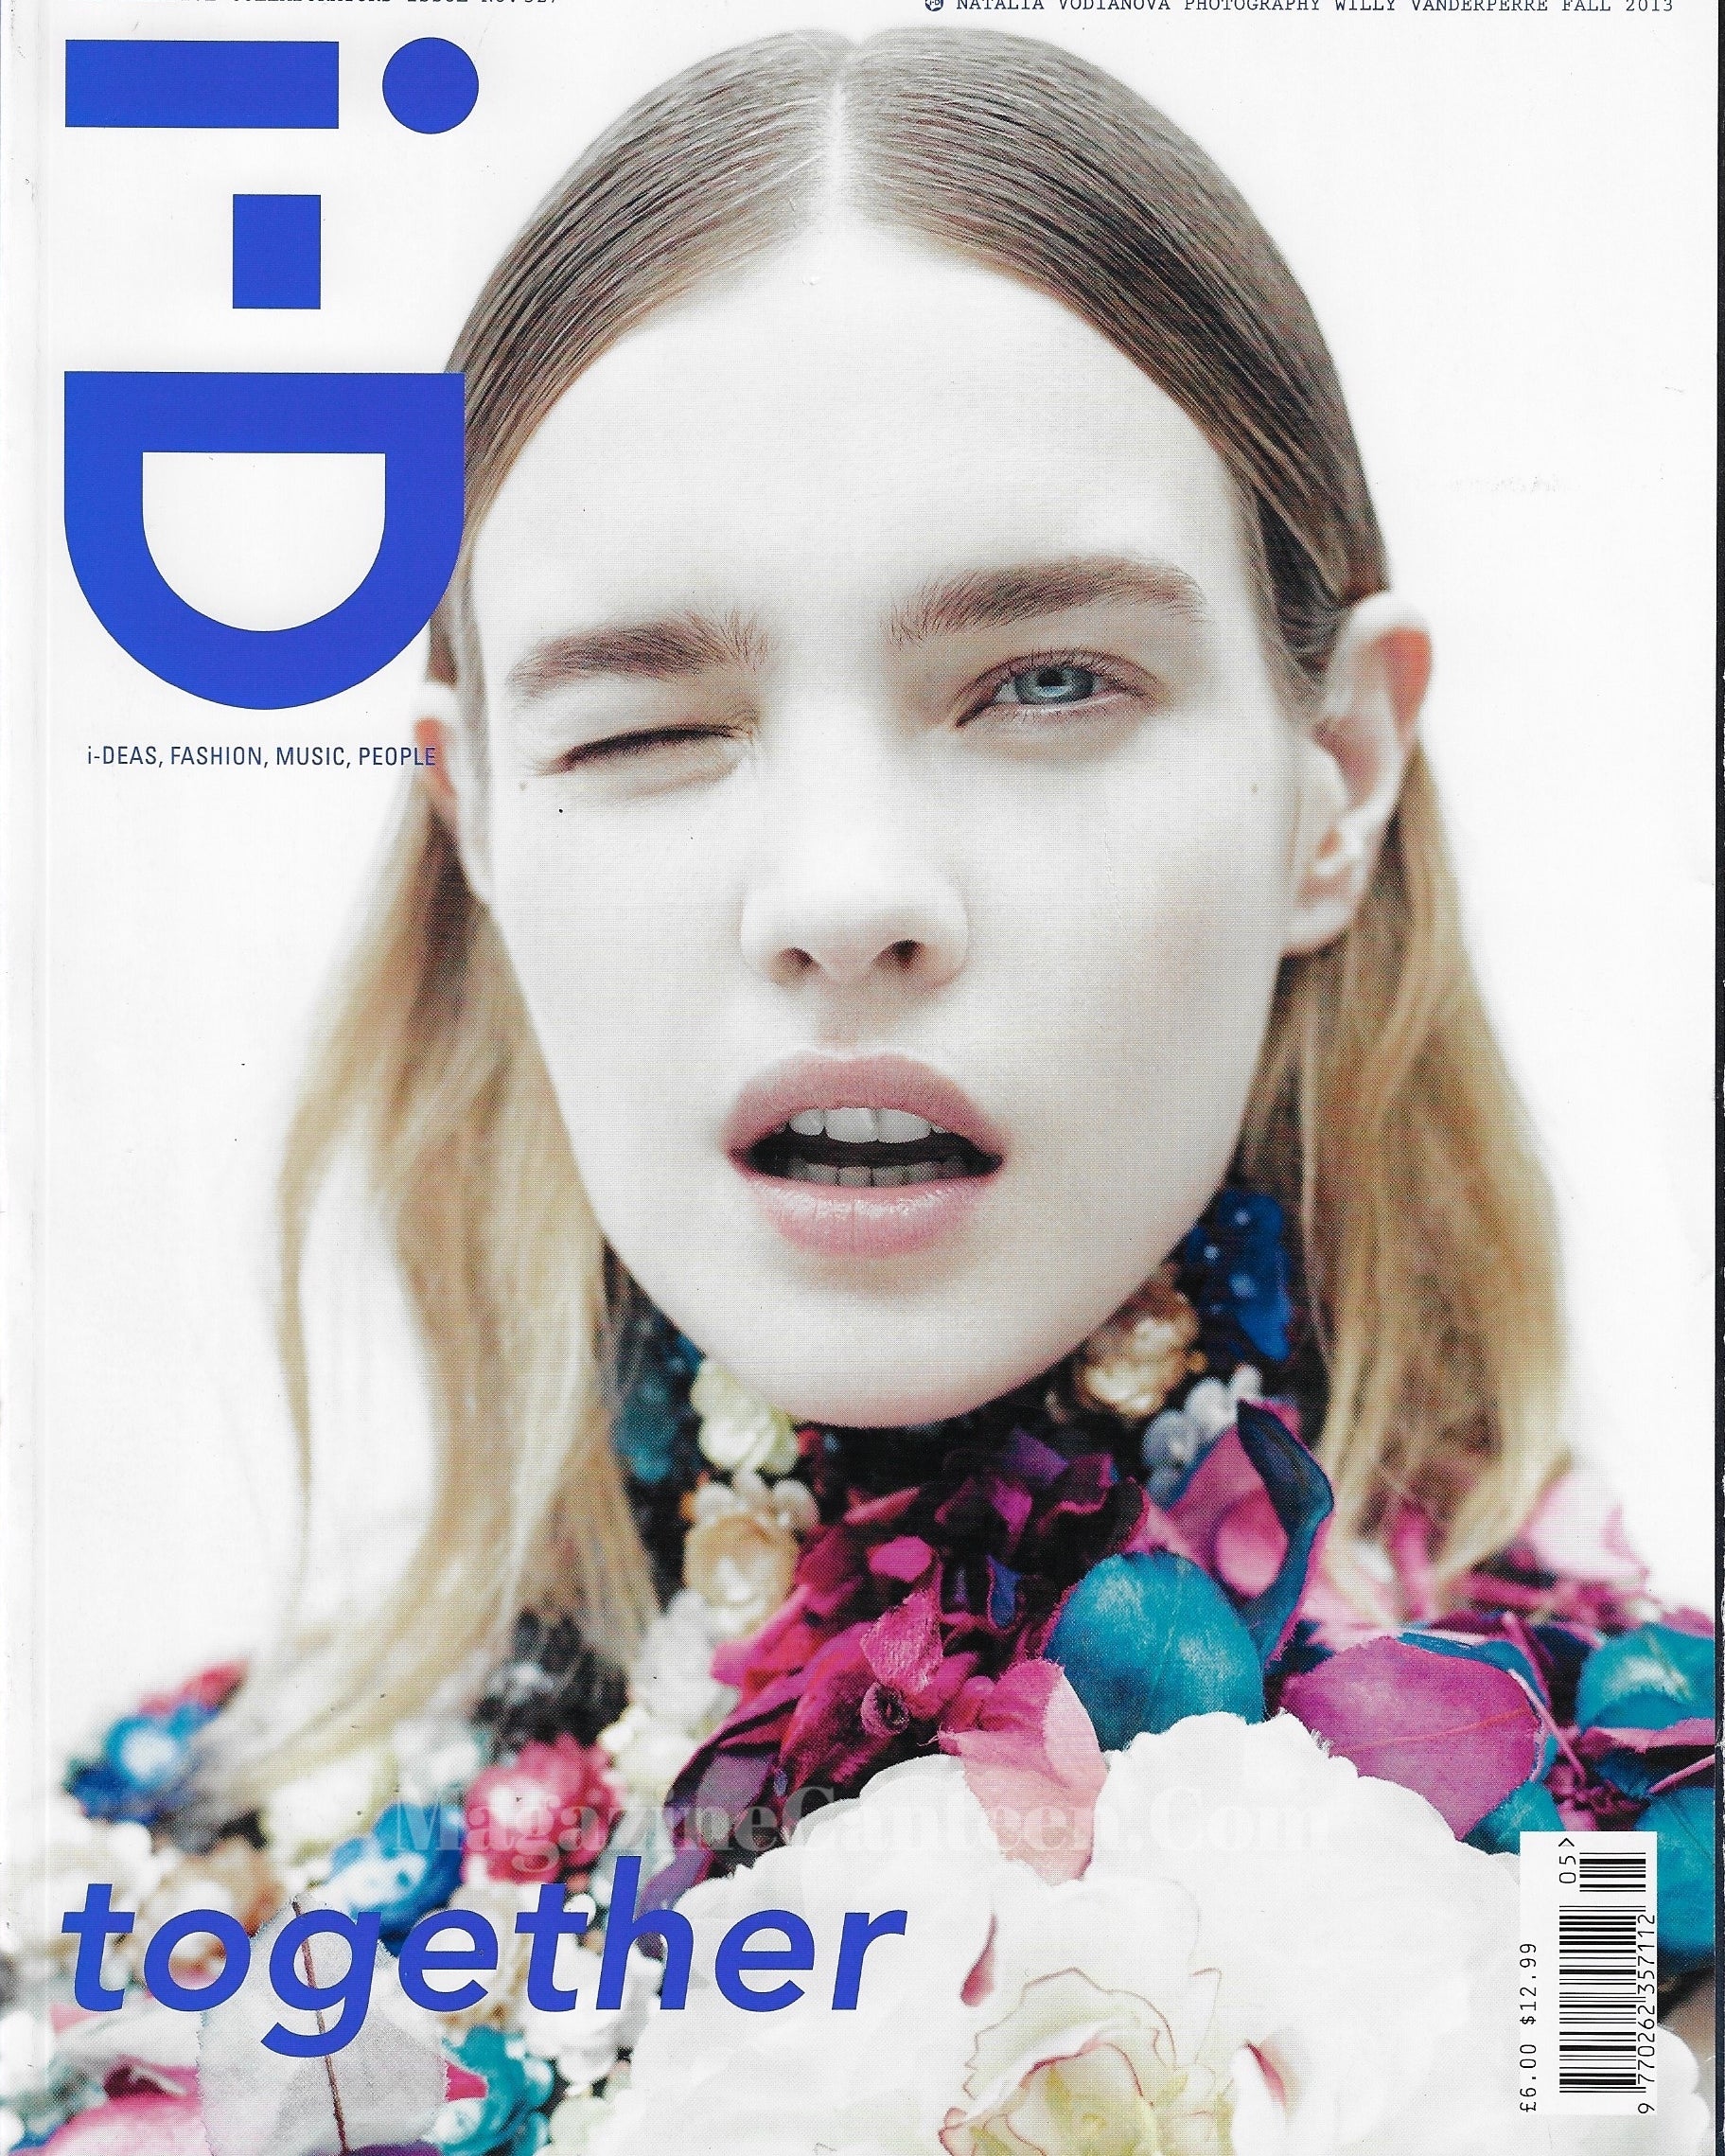 I-D Magazine 327 - Natalia Vodianova 2013